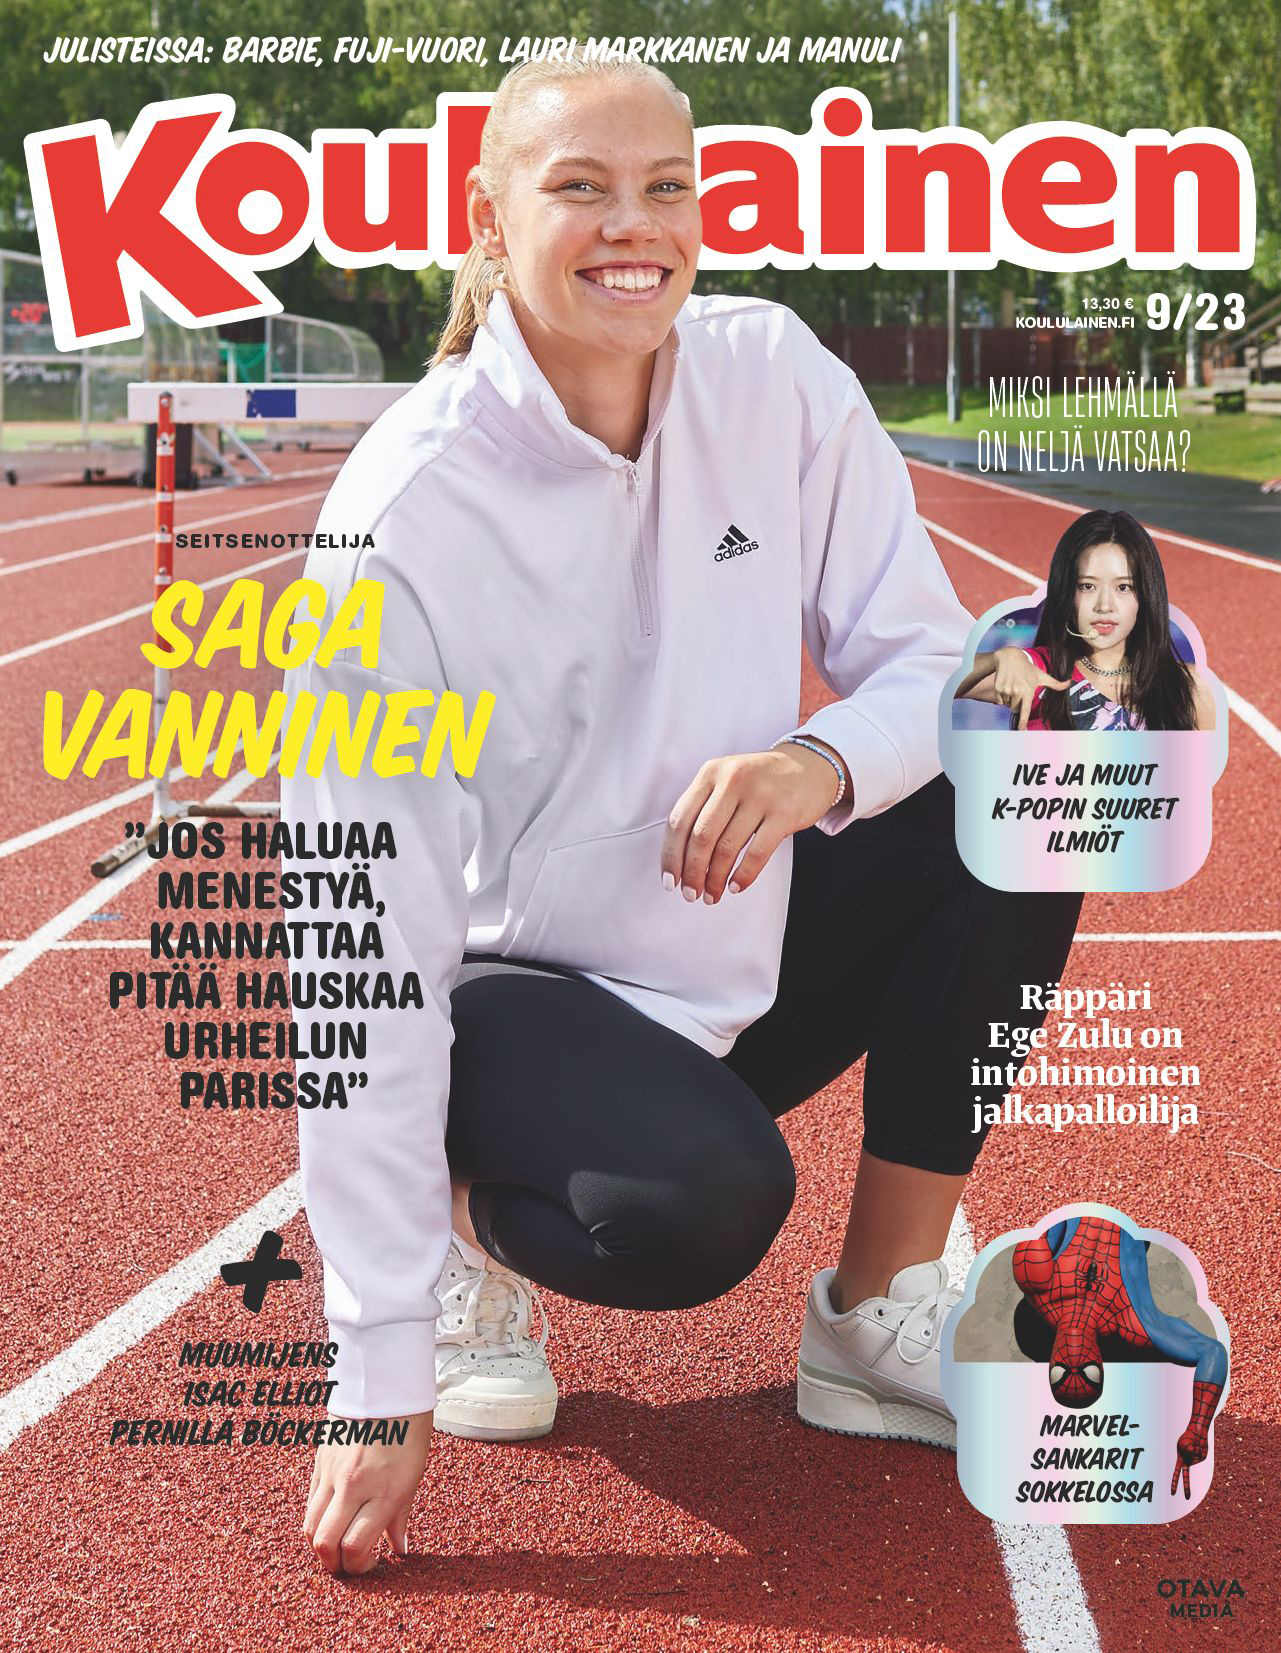 Levyesti hymyilevä Saga Vanninen kyykkää juoksuradalla mustissa juoksuhousuissa ja valokoisessa Adidas-hupparissa Koululaisen kannessa.